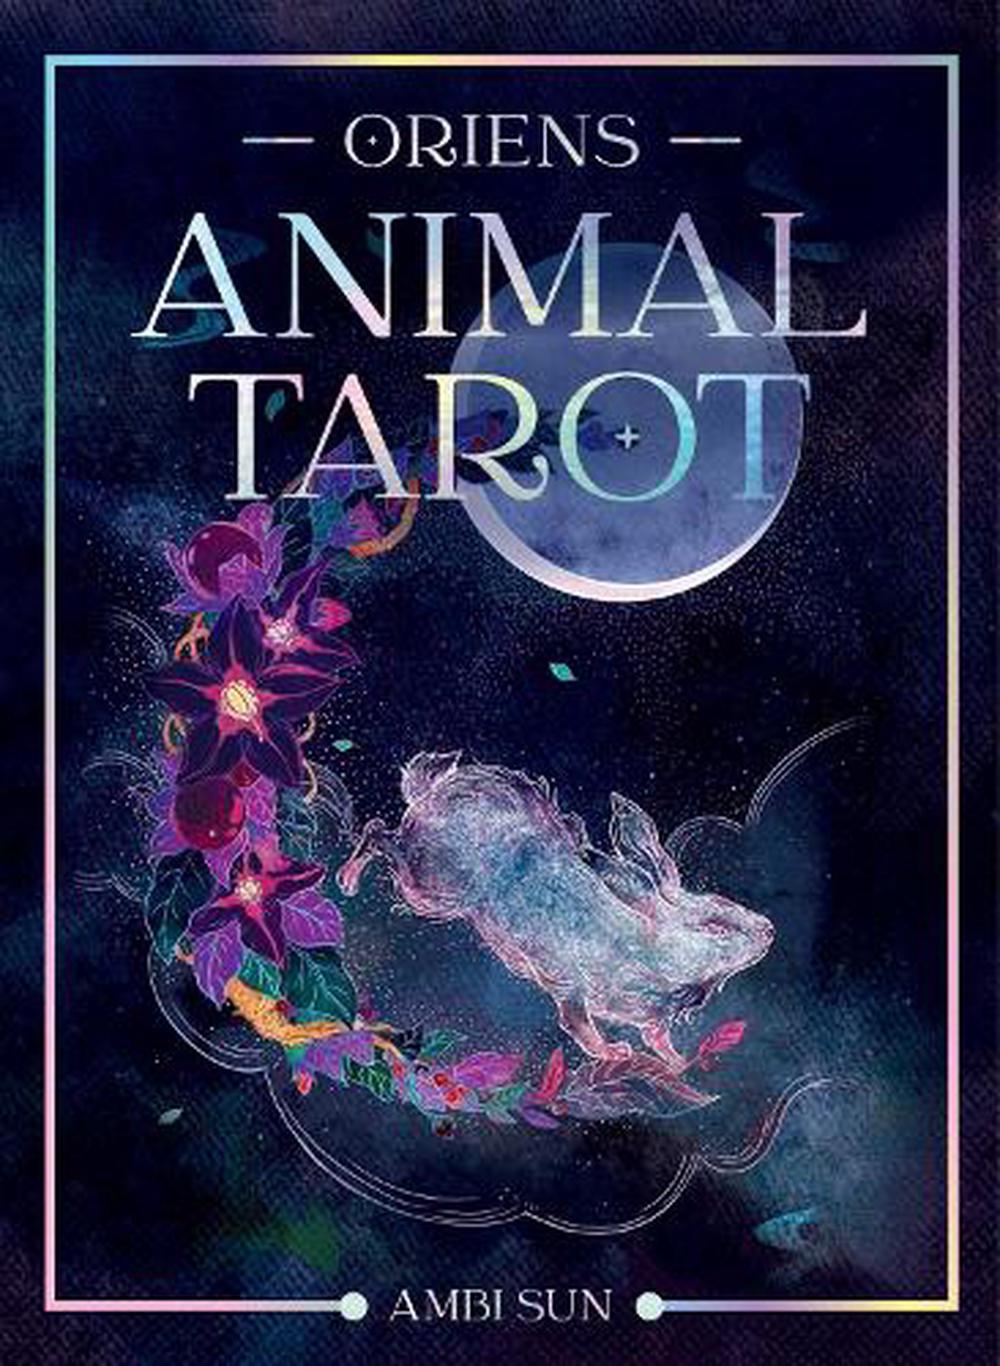 TAROT CARDS || ORIEN'S ANIMAL TAROT